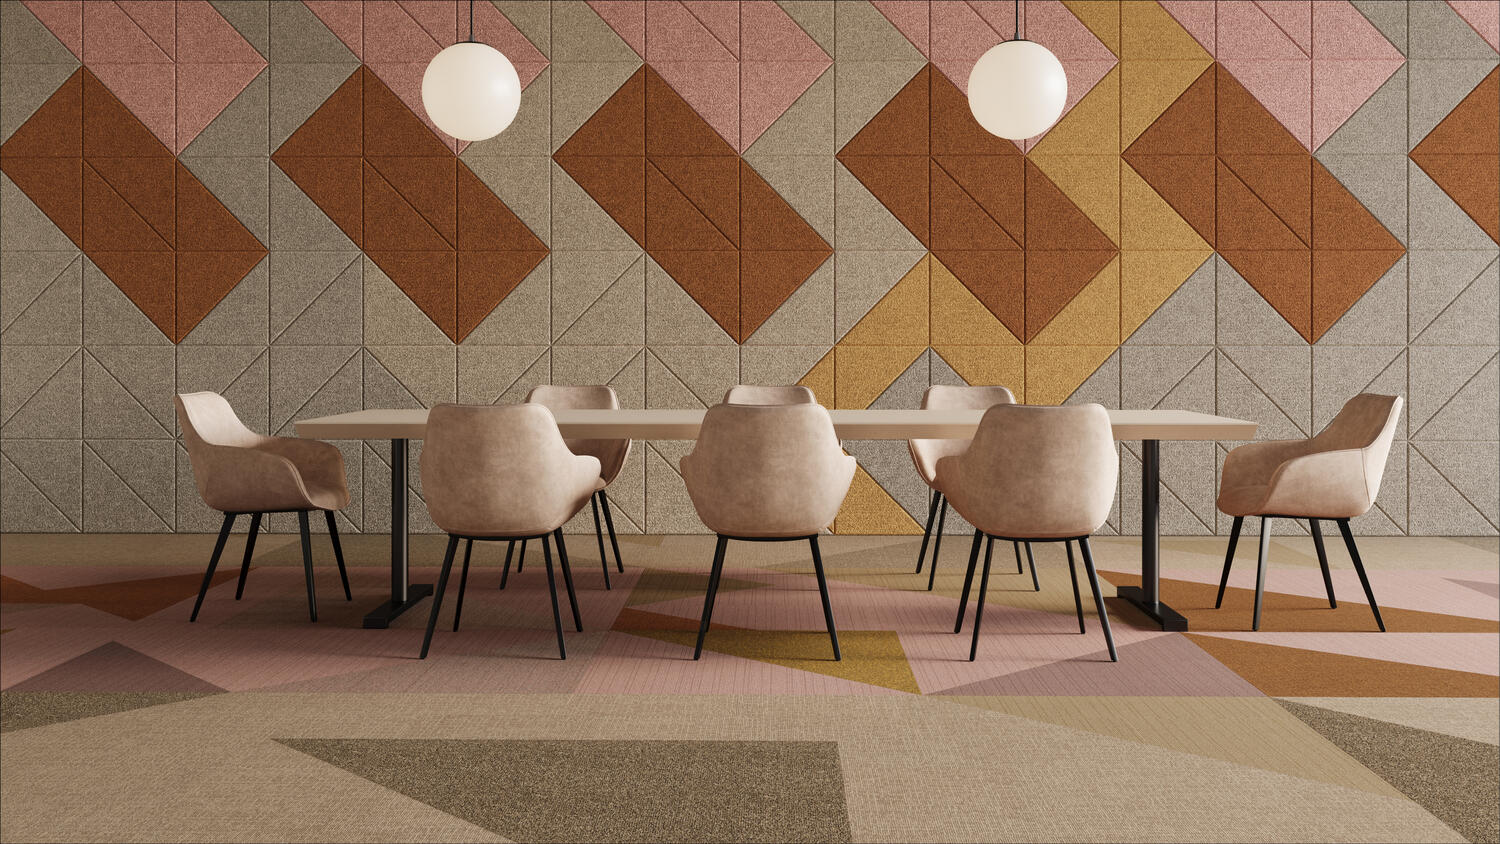 Harmoninga vidaus erdvė su derančia spalvų palete, interjero dizainas naudojant Tarkett grindų dangą ir Baux akustines sienas